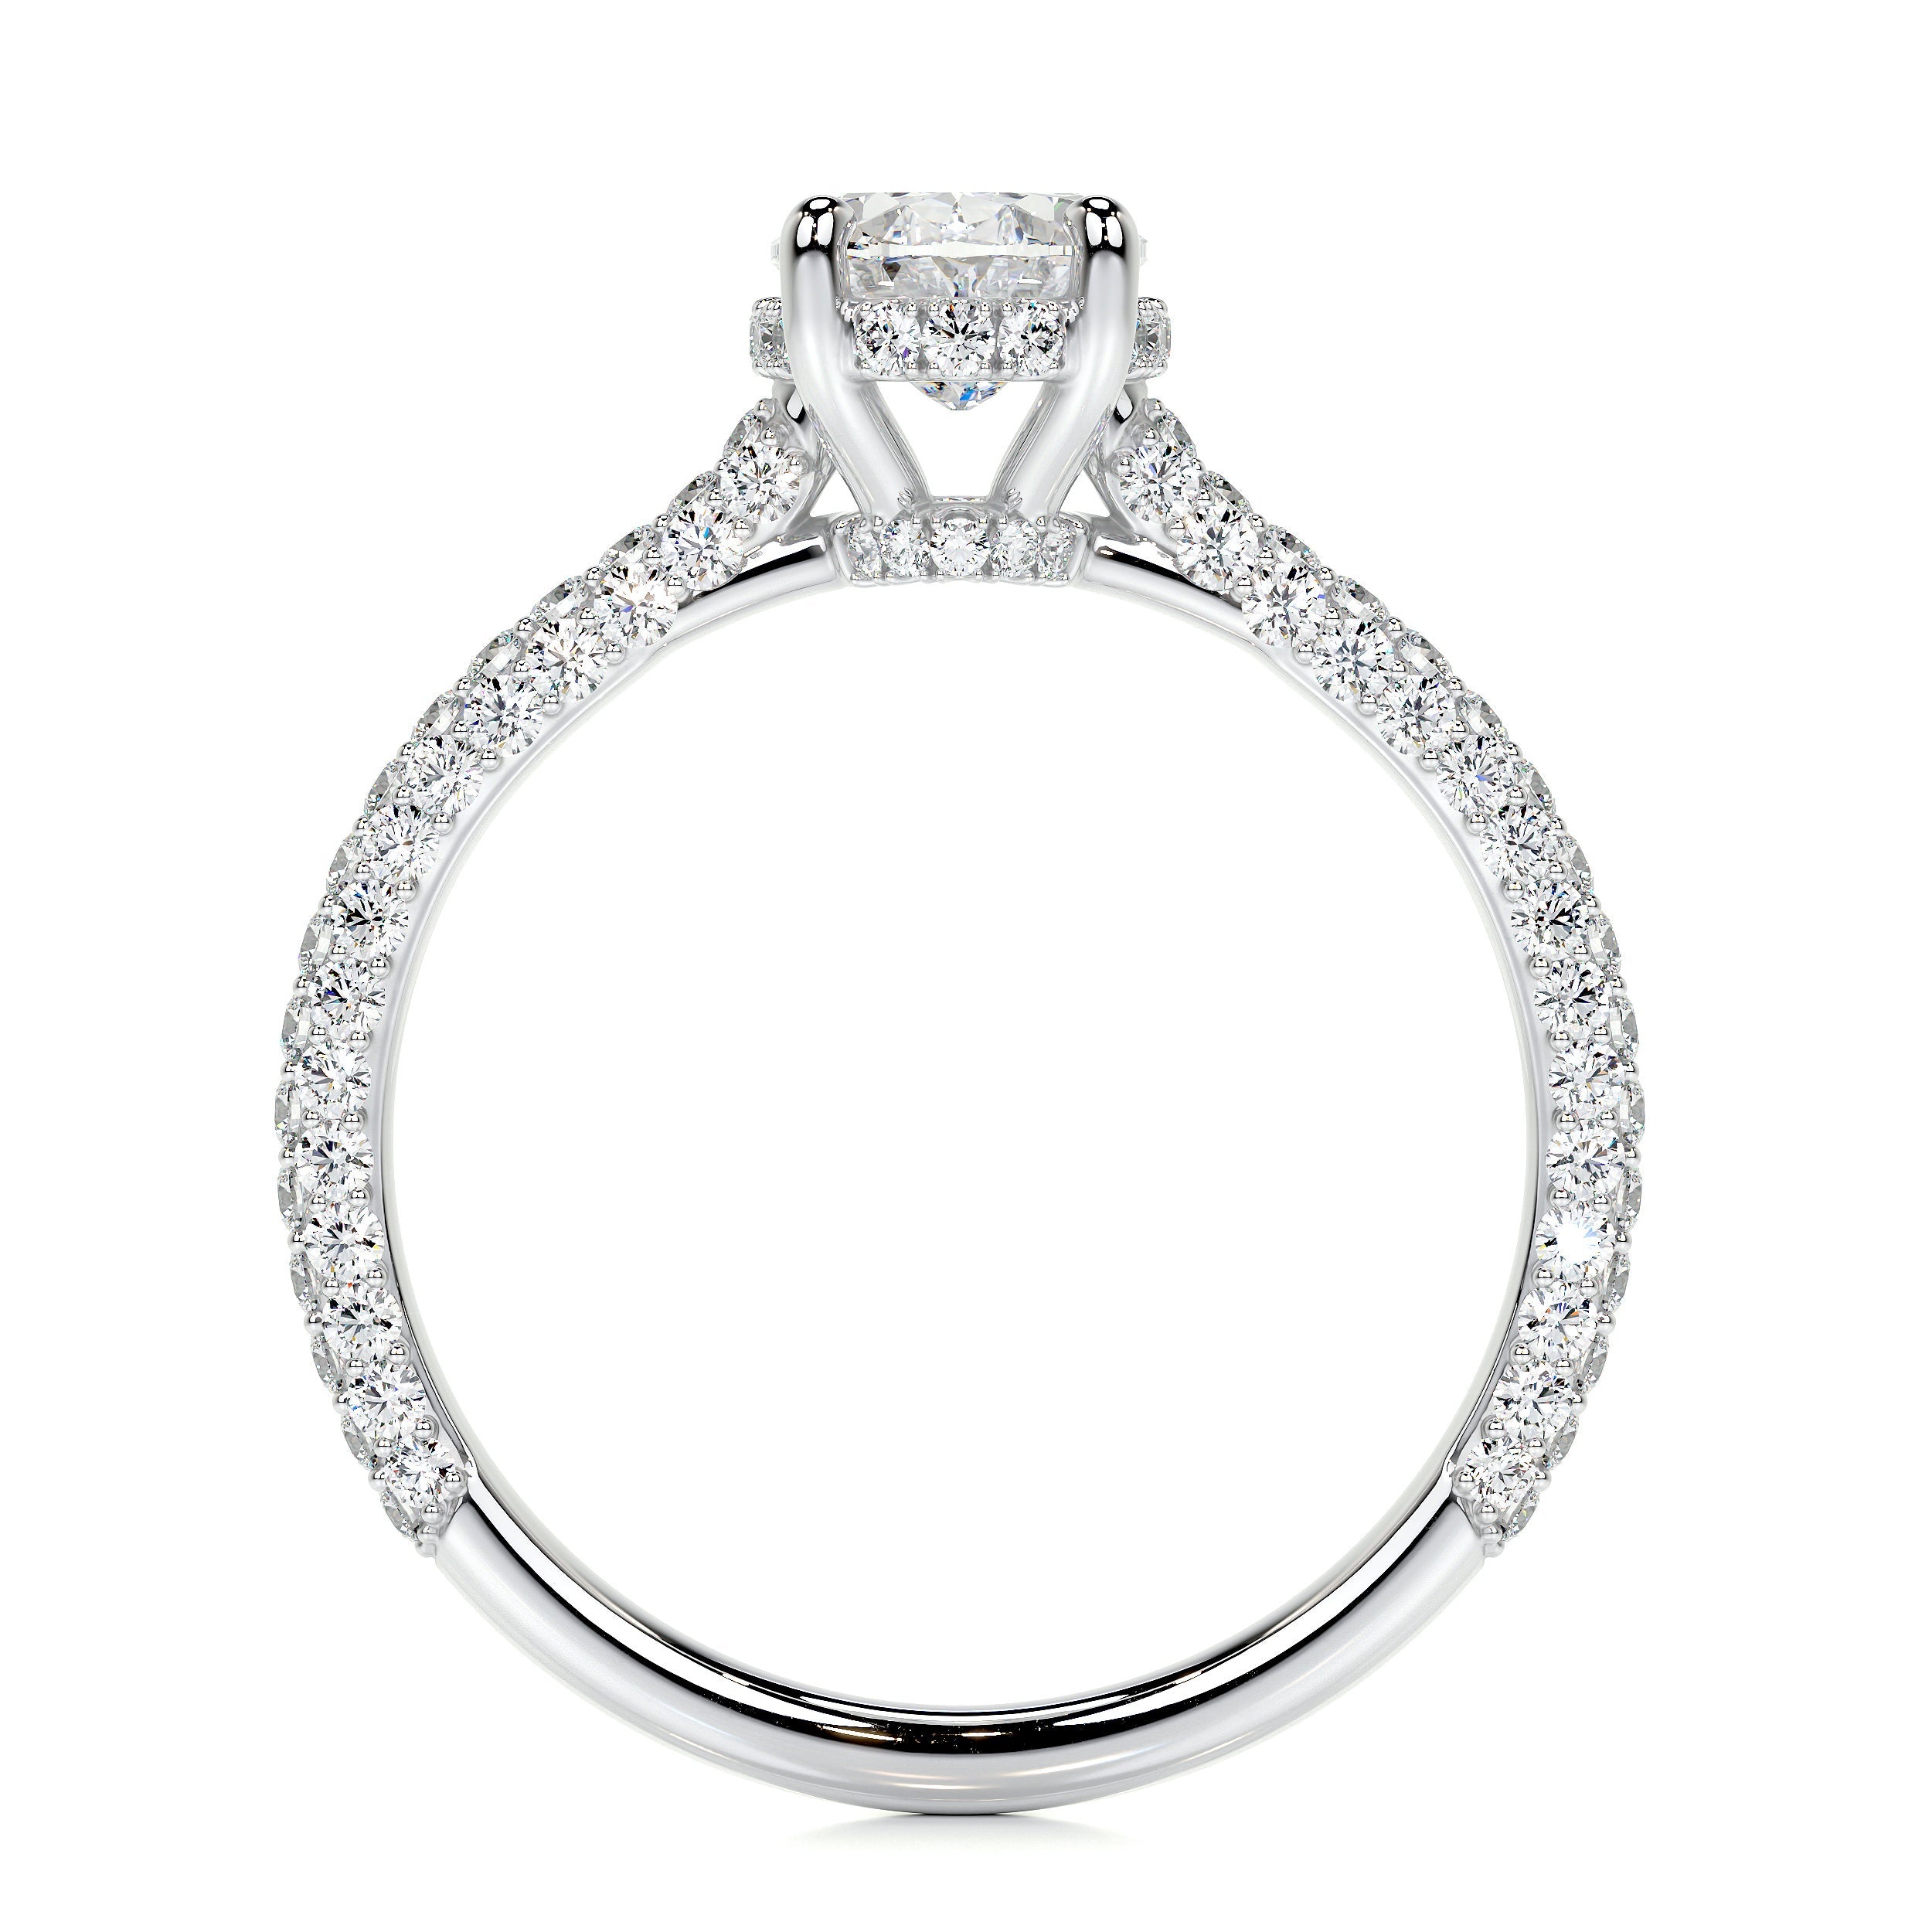 Rebecca Lab Grown Diamond Ring   (1.8 Carat) -18K White Gold